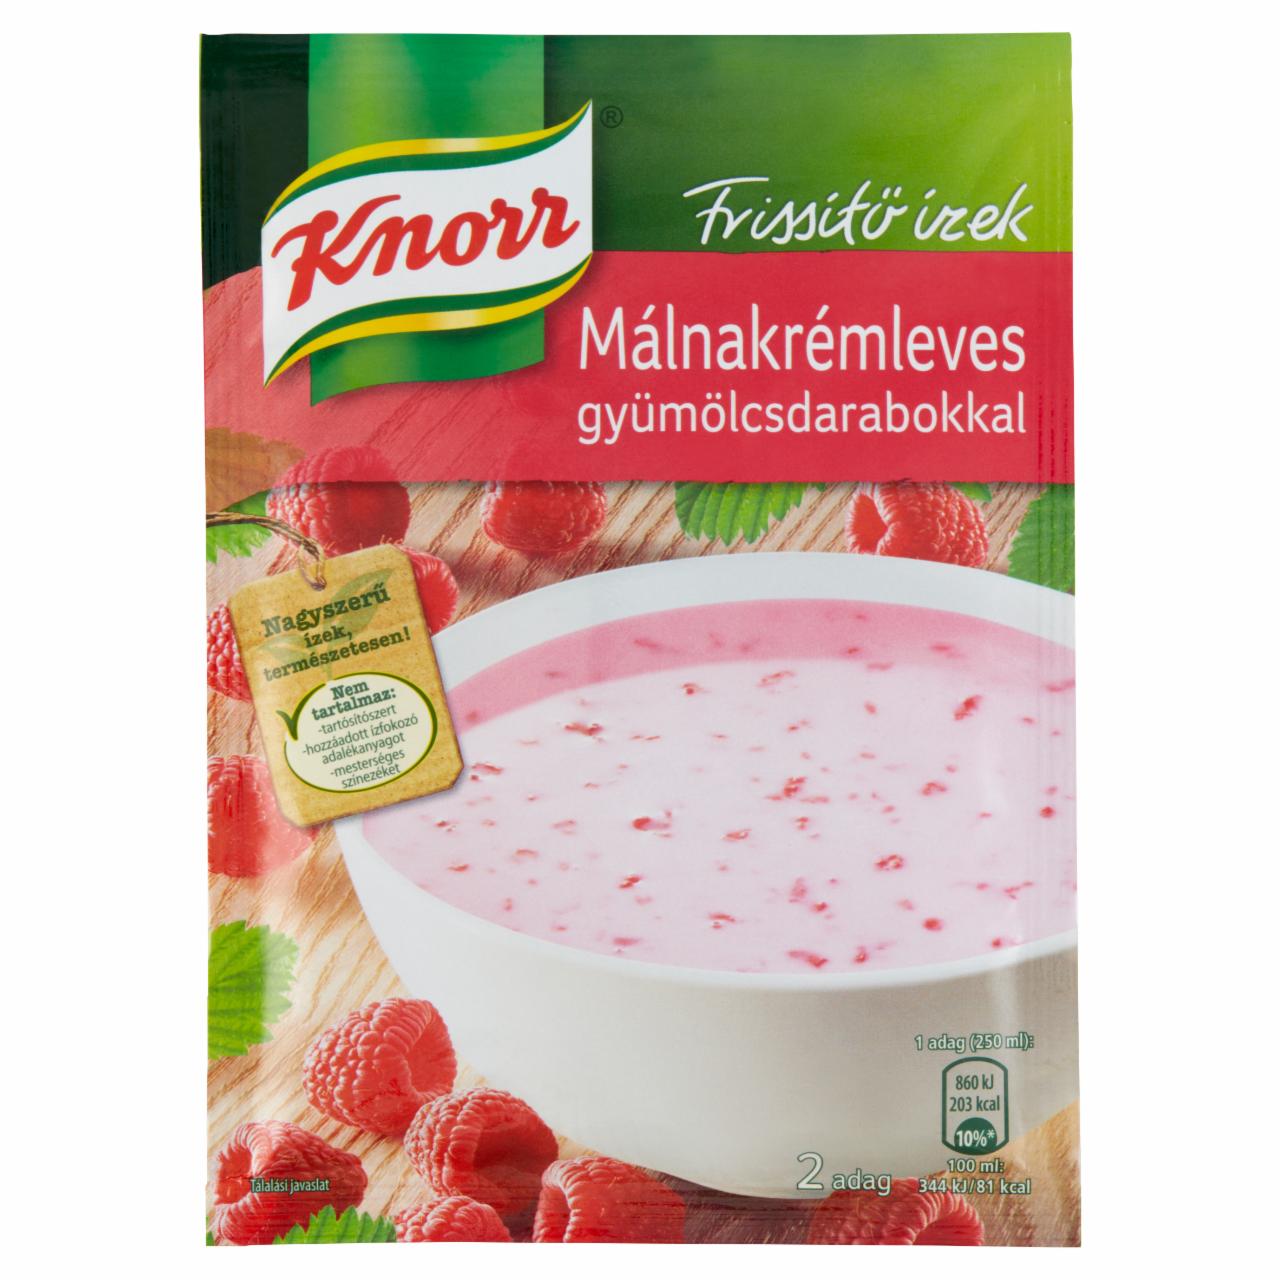 Képek - Knorr Frissítő Ízek málnakrémleves gyümölcsdarabokkal 41 g